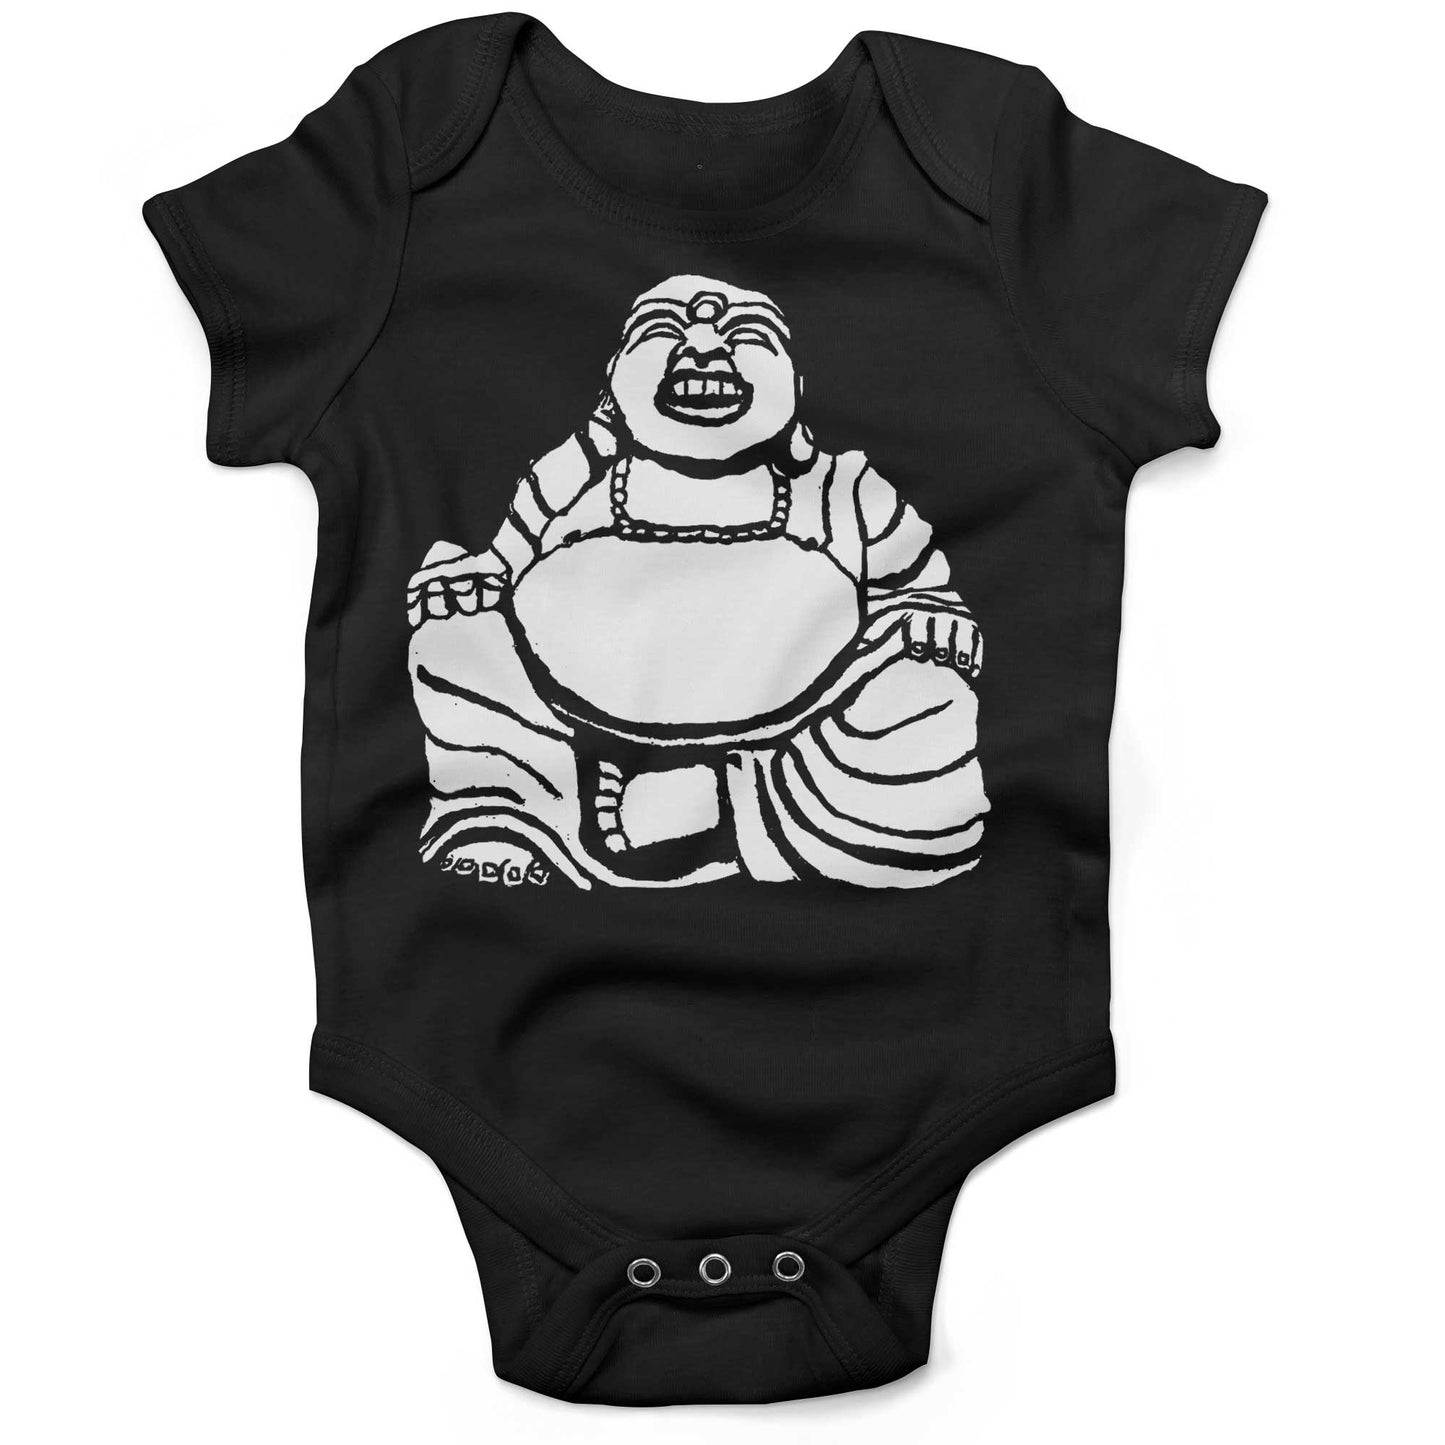 Laughing Buddha Infant Bodysuit or Raglan Baby Tee-Organic Black-3-6 months